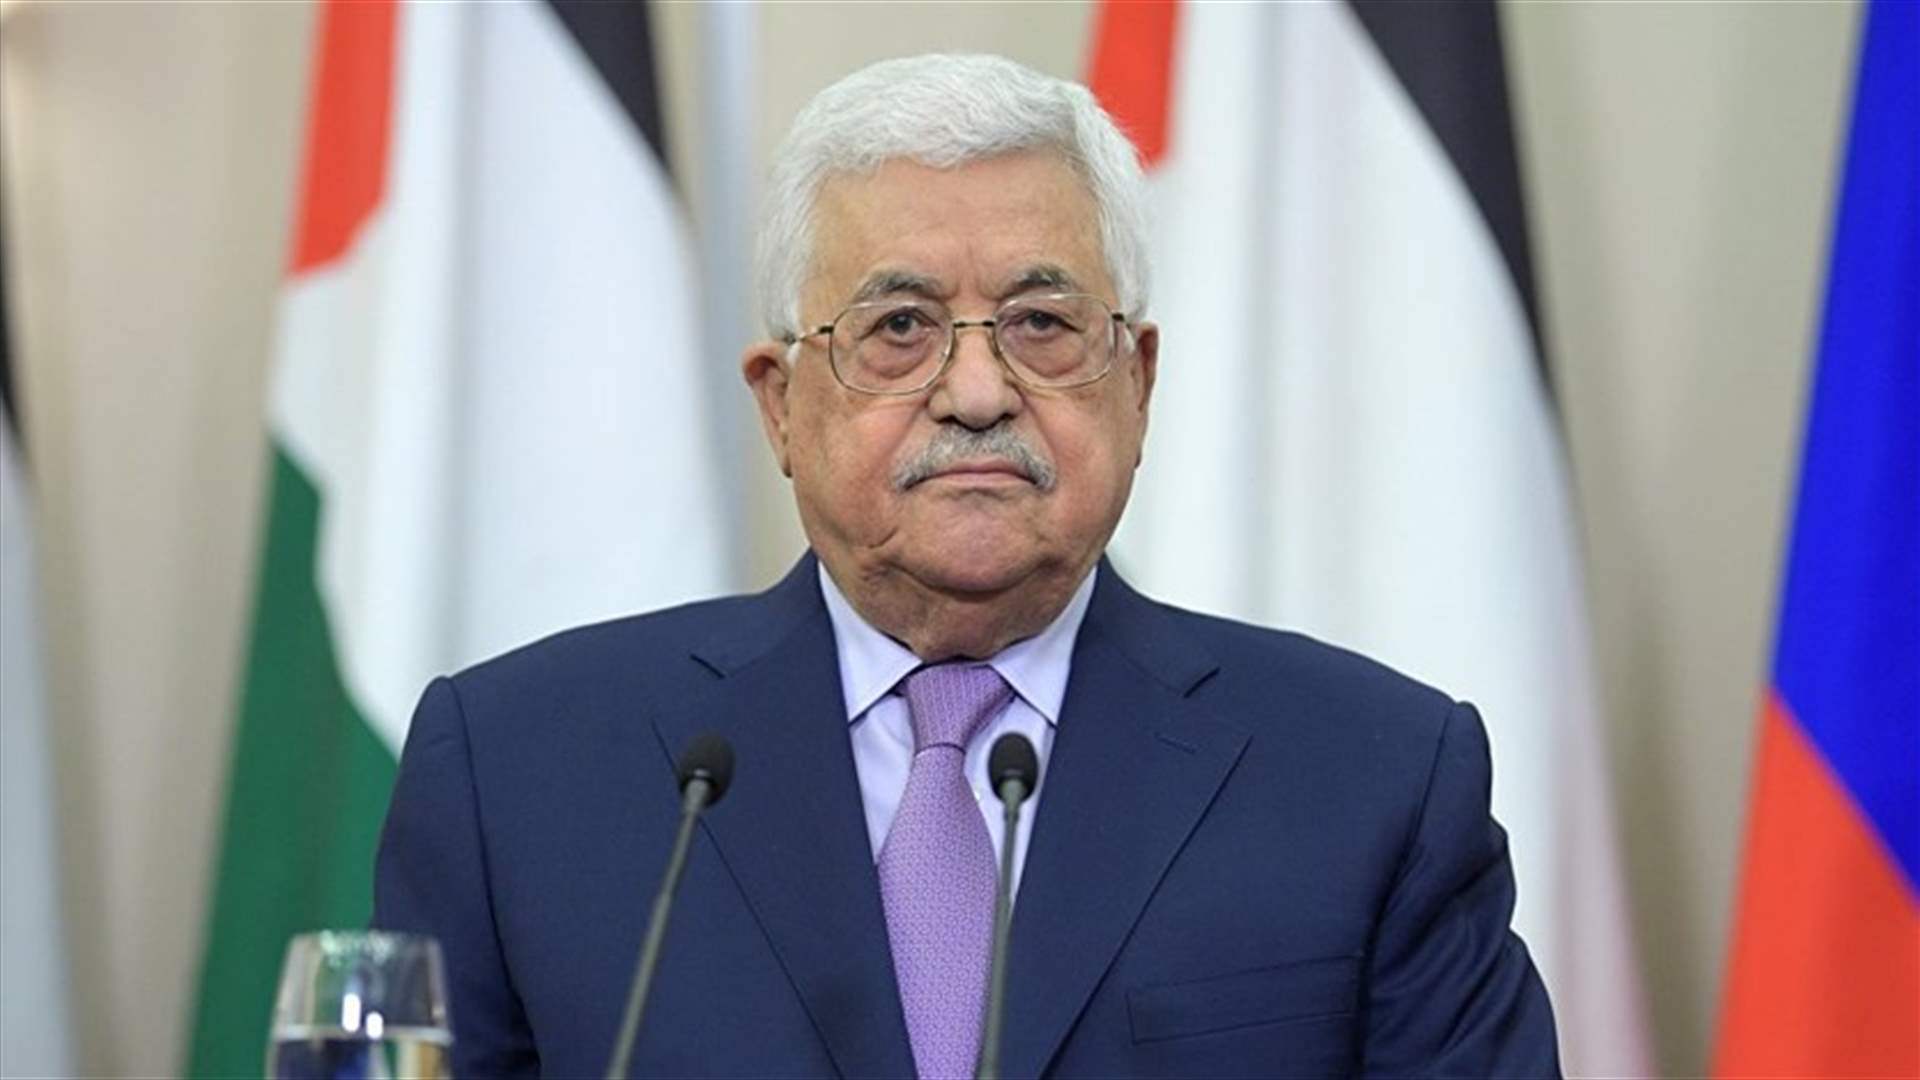 عباس: فلسطين ستواصل مسعاها للحصول على العضوية الكاملة في الأمم المتحدة